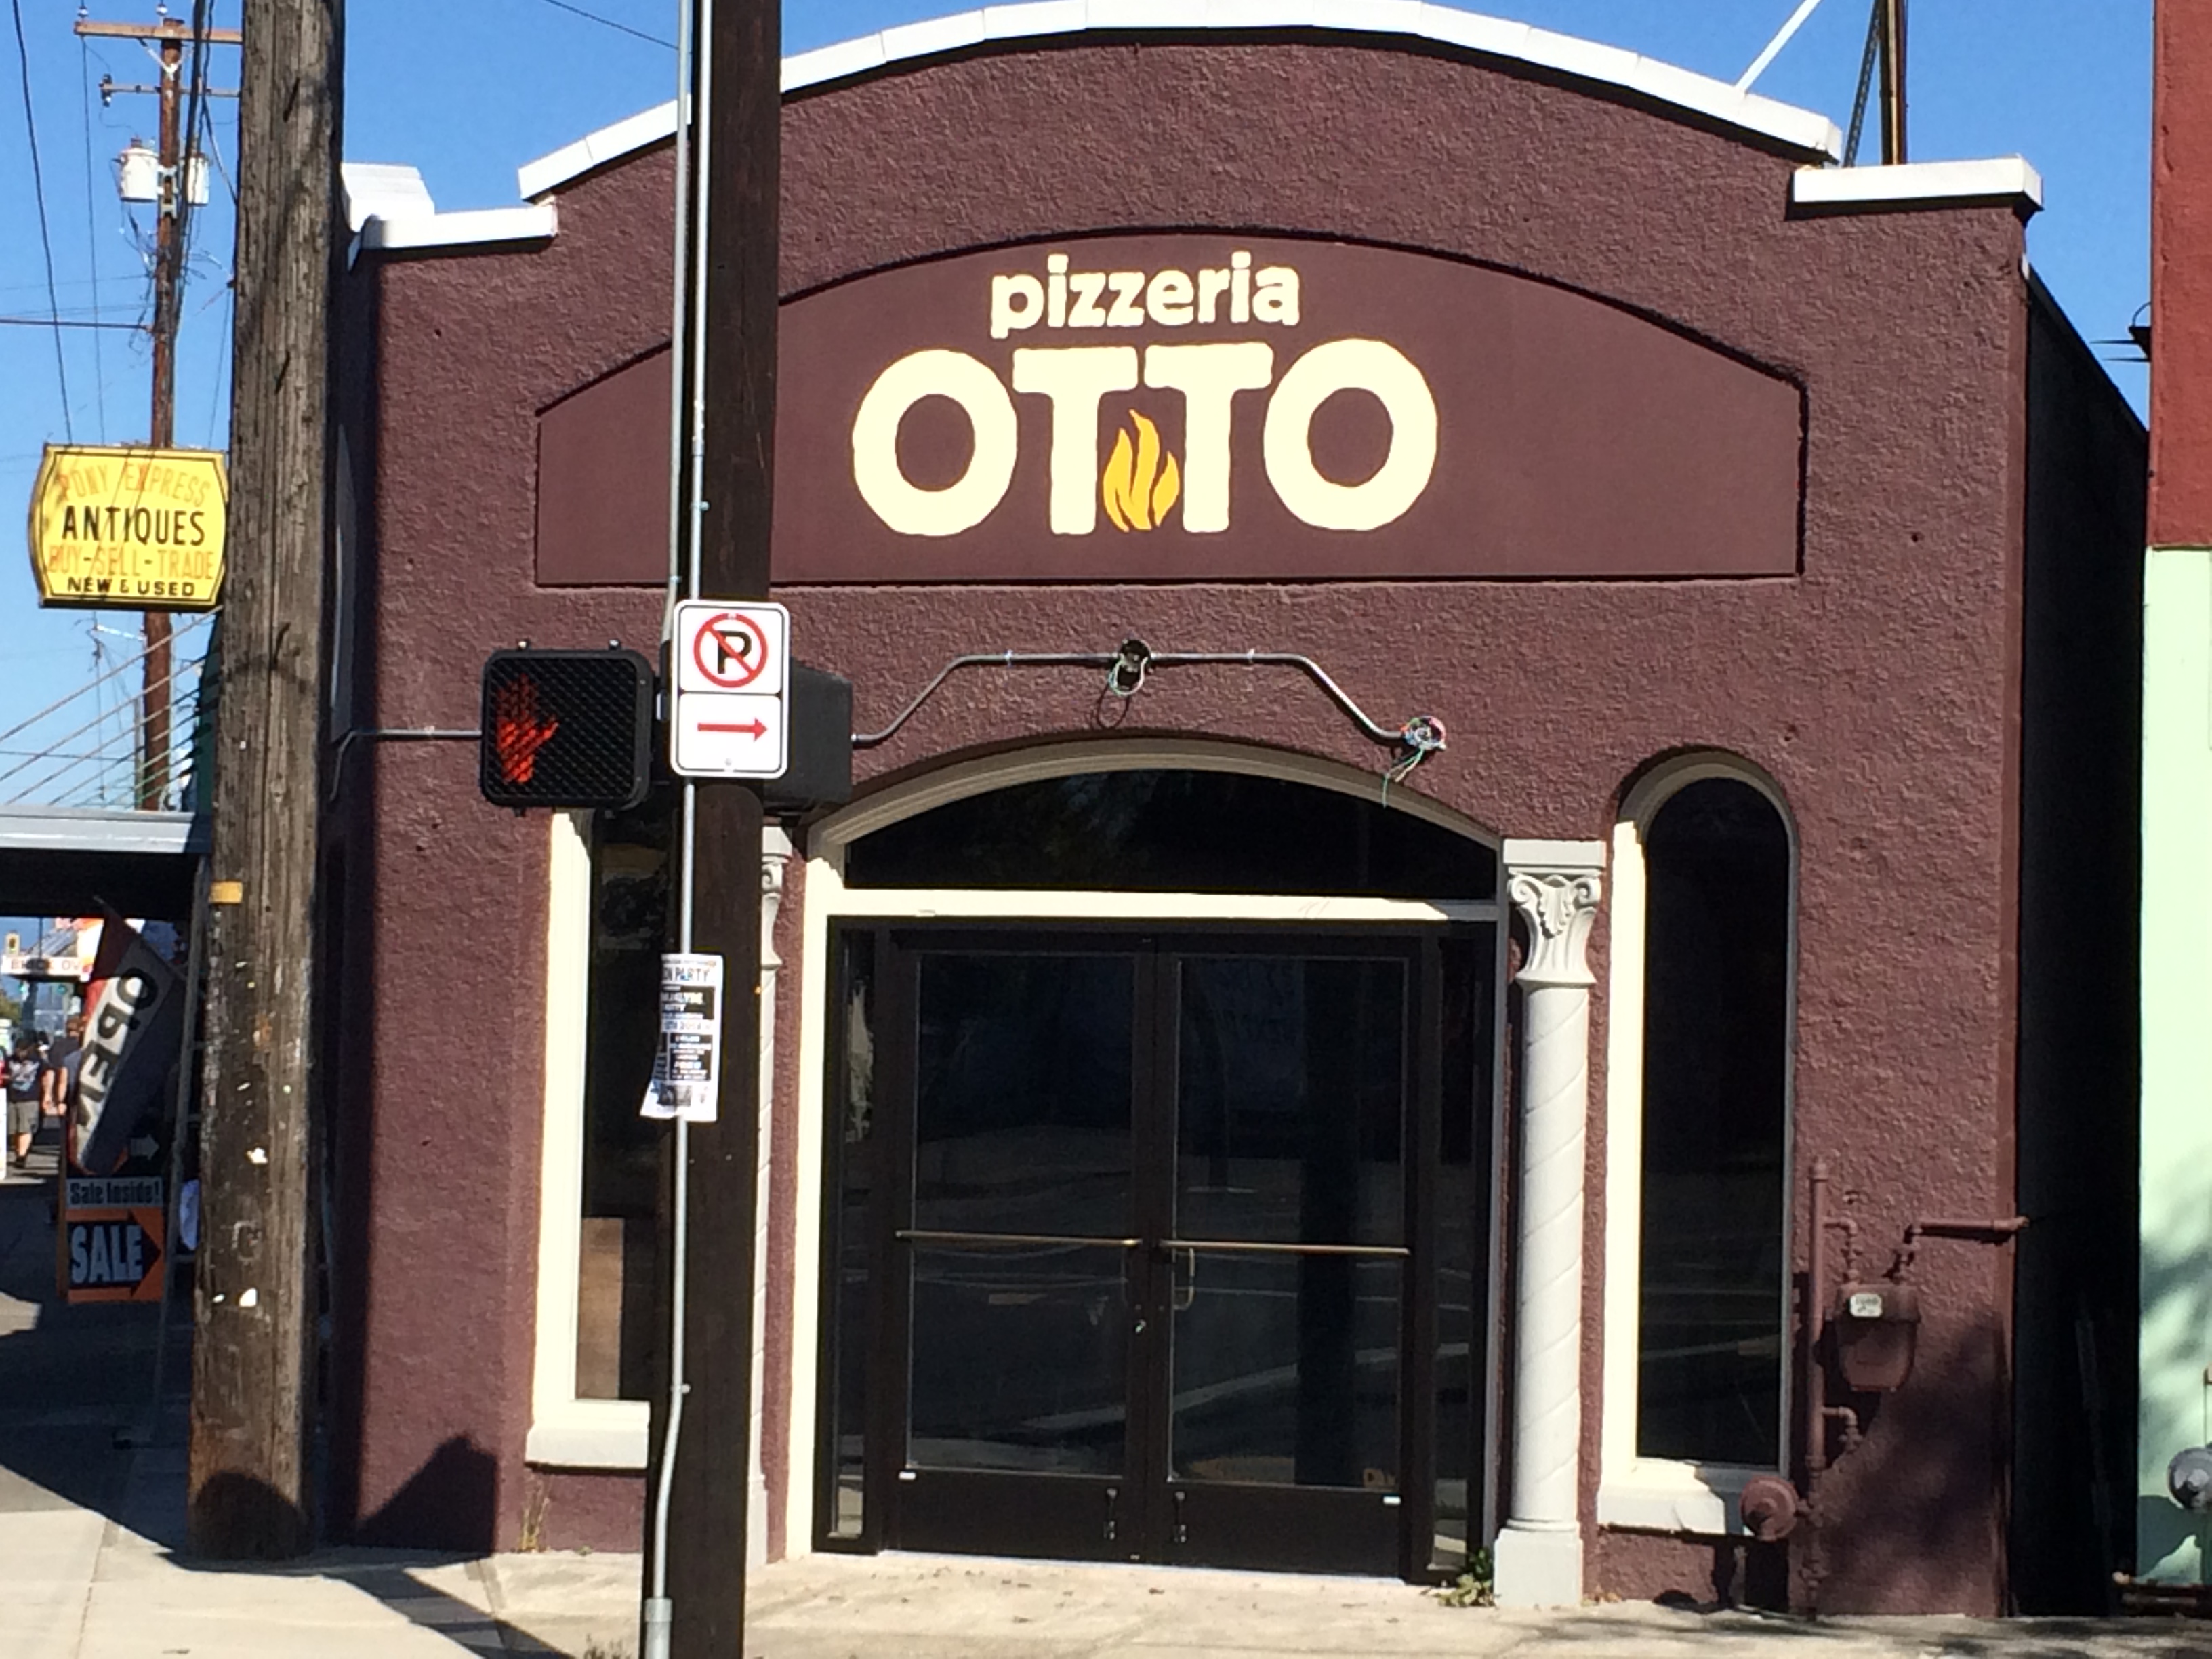 Pizzeria Otto, NE 67 & Sandy, Lettering over stucco